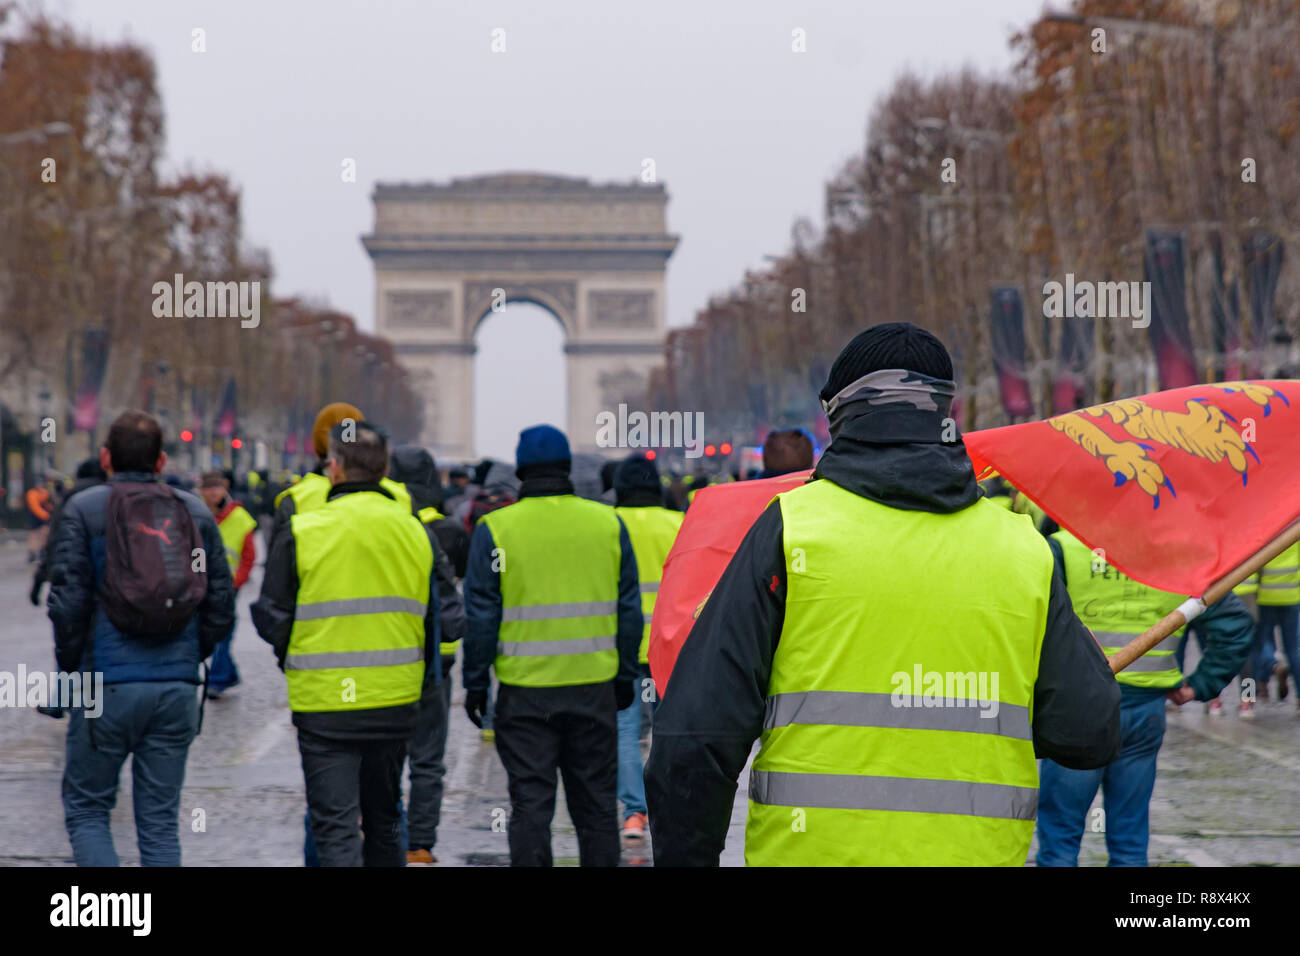 Giubbotti di giallo di dimostrazione (Gilets Jaunes) manifestanti contro le tasse sul carburante, il governo e il presidente francese Macron a Champs-Élysées, Parigi, Francia Foto Stock